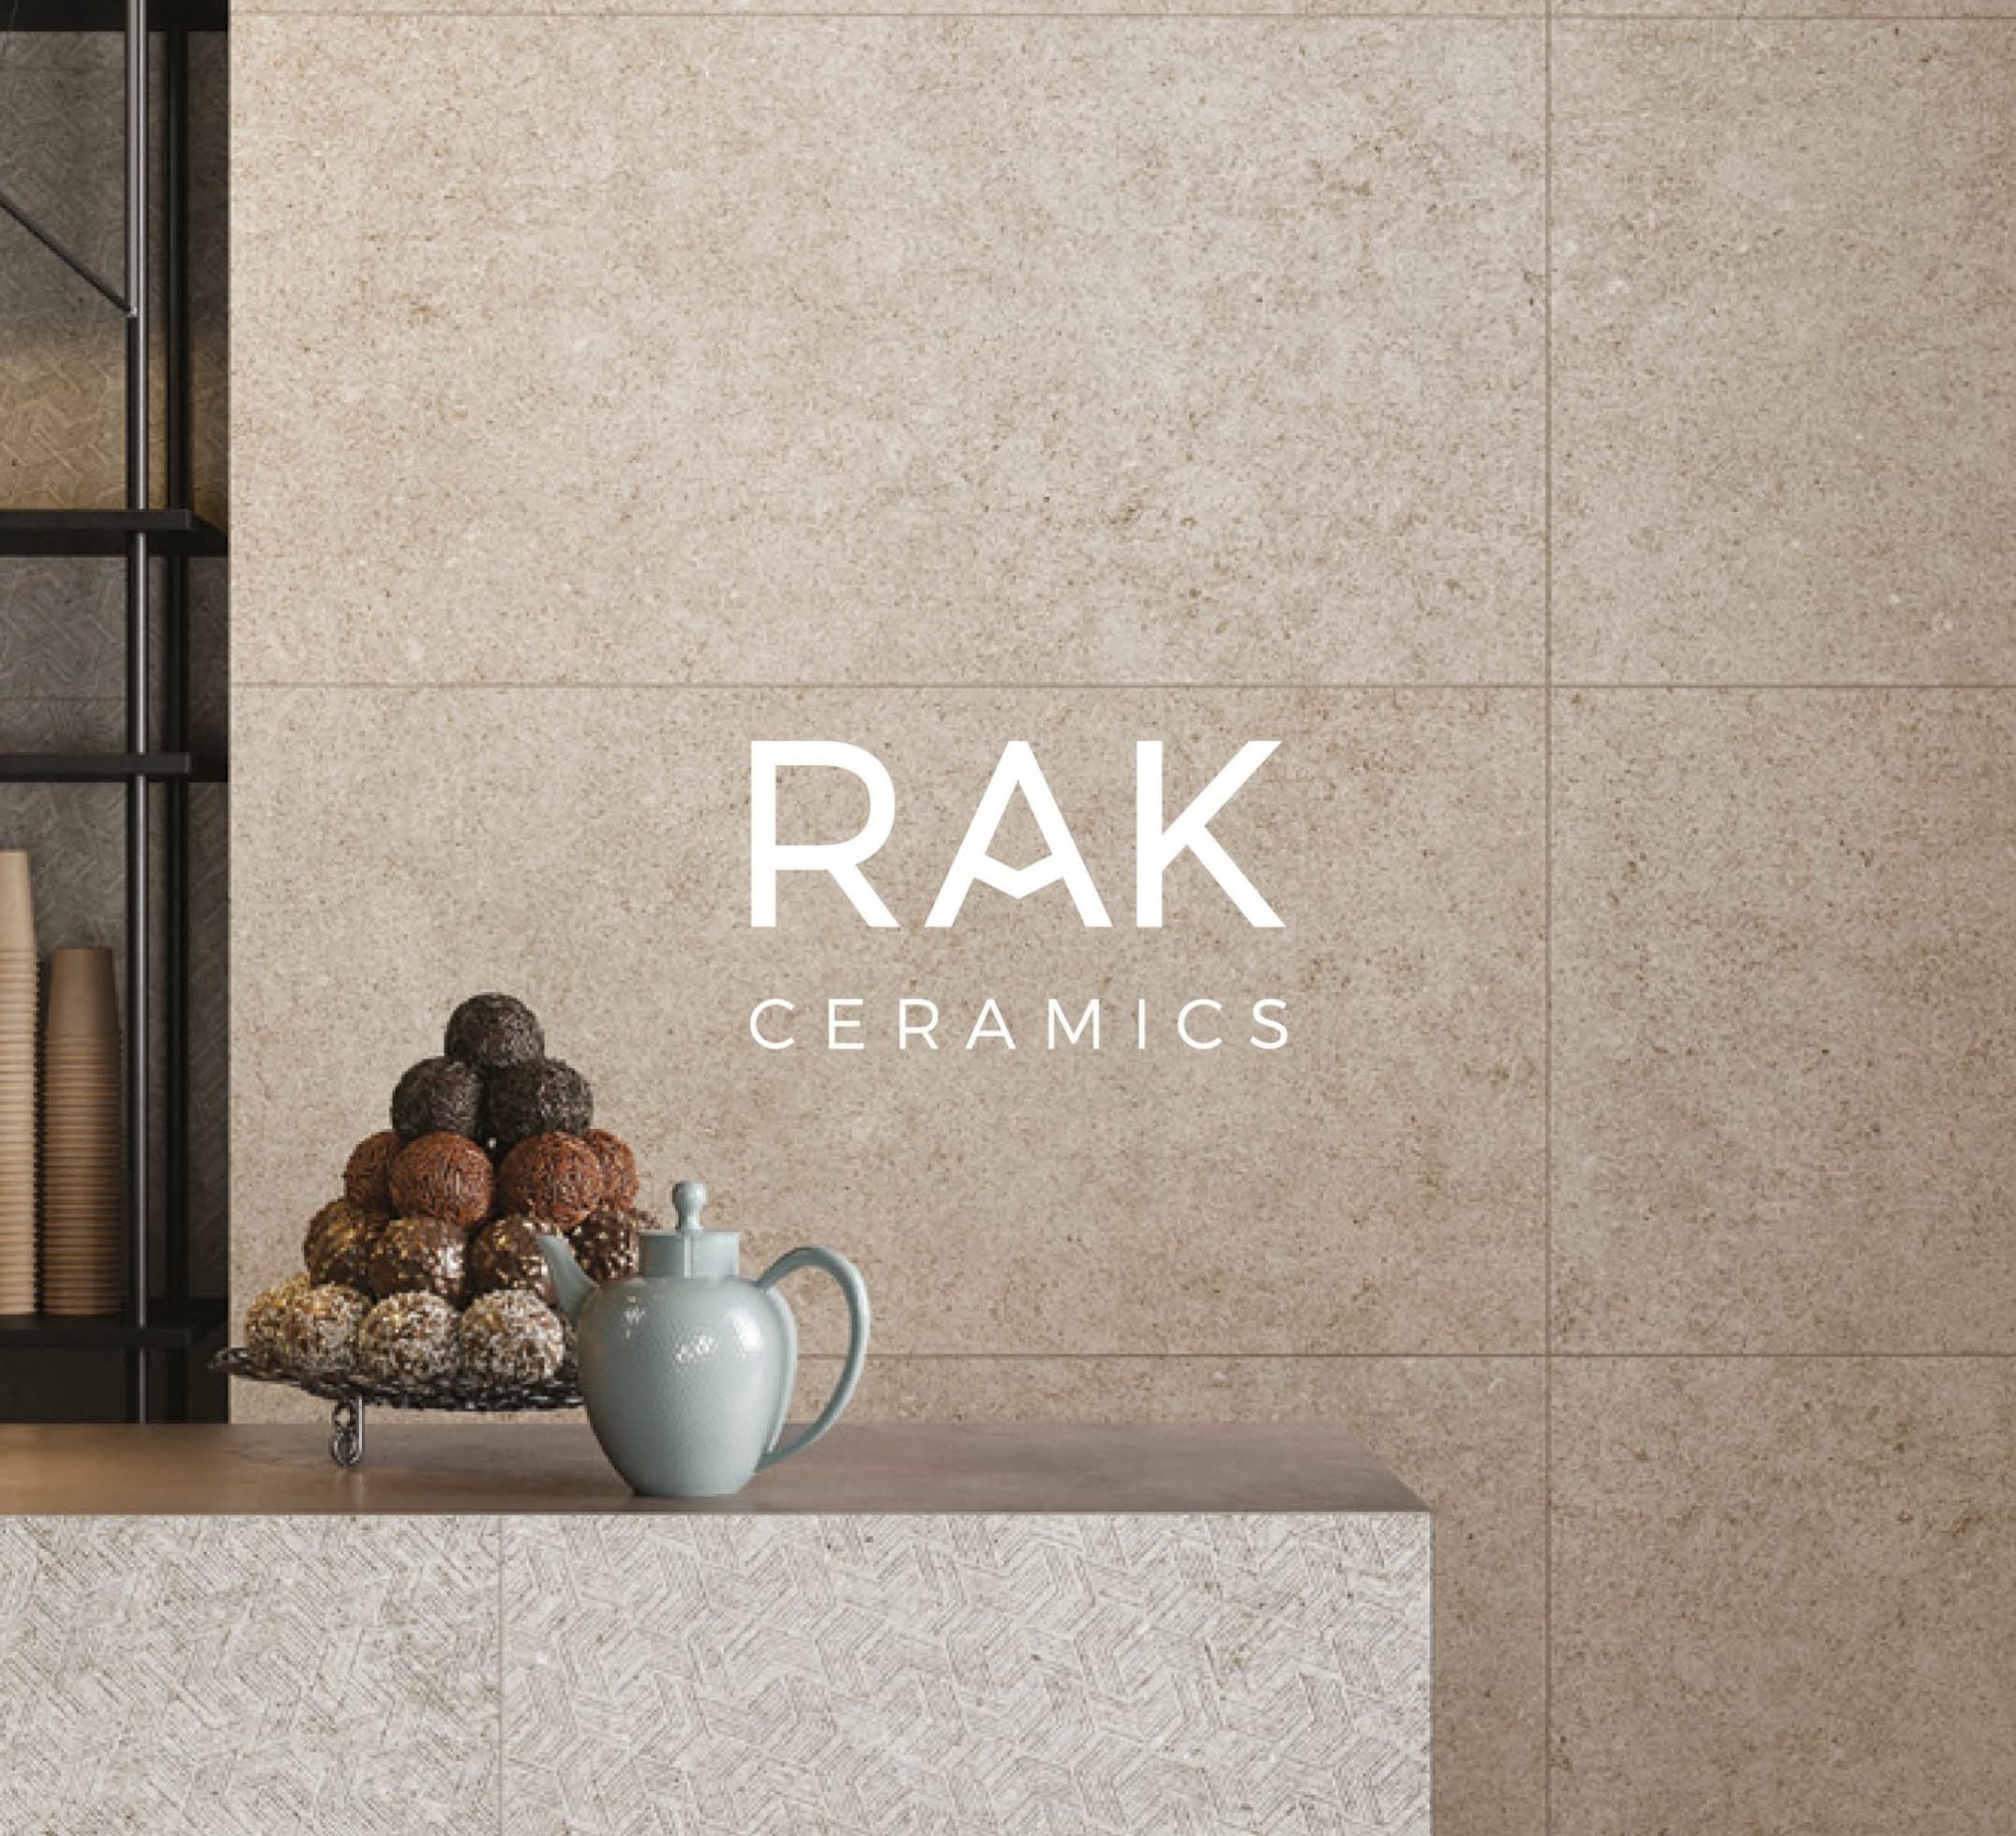 RAK Ceramics Announces 2016 Financial Results